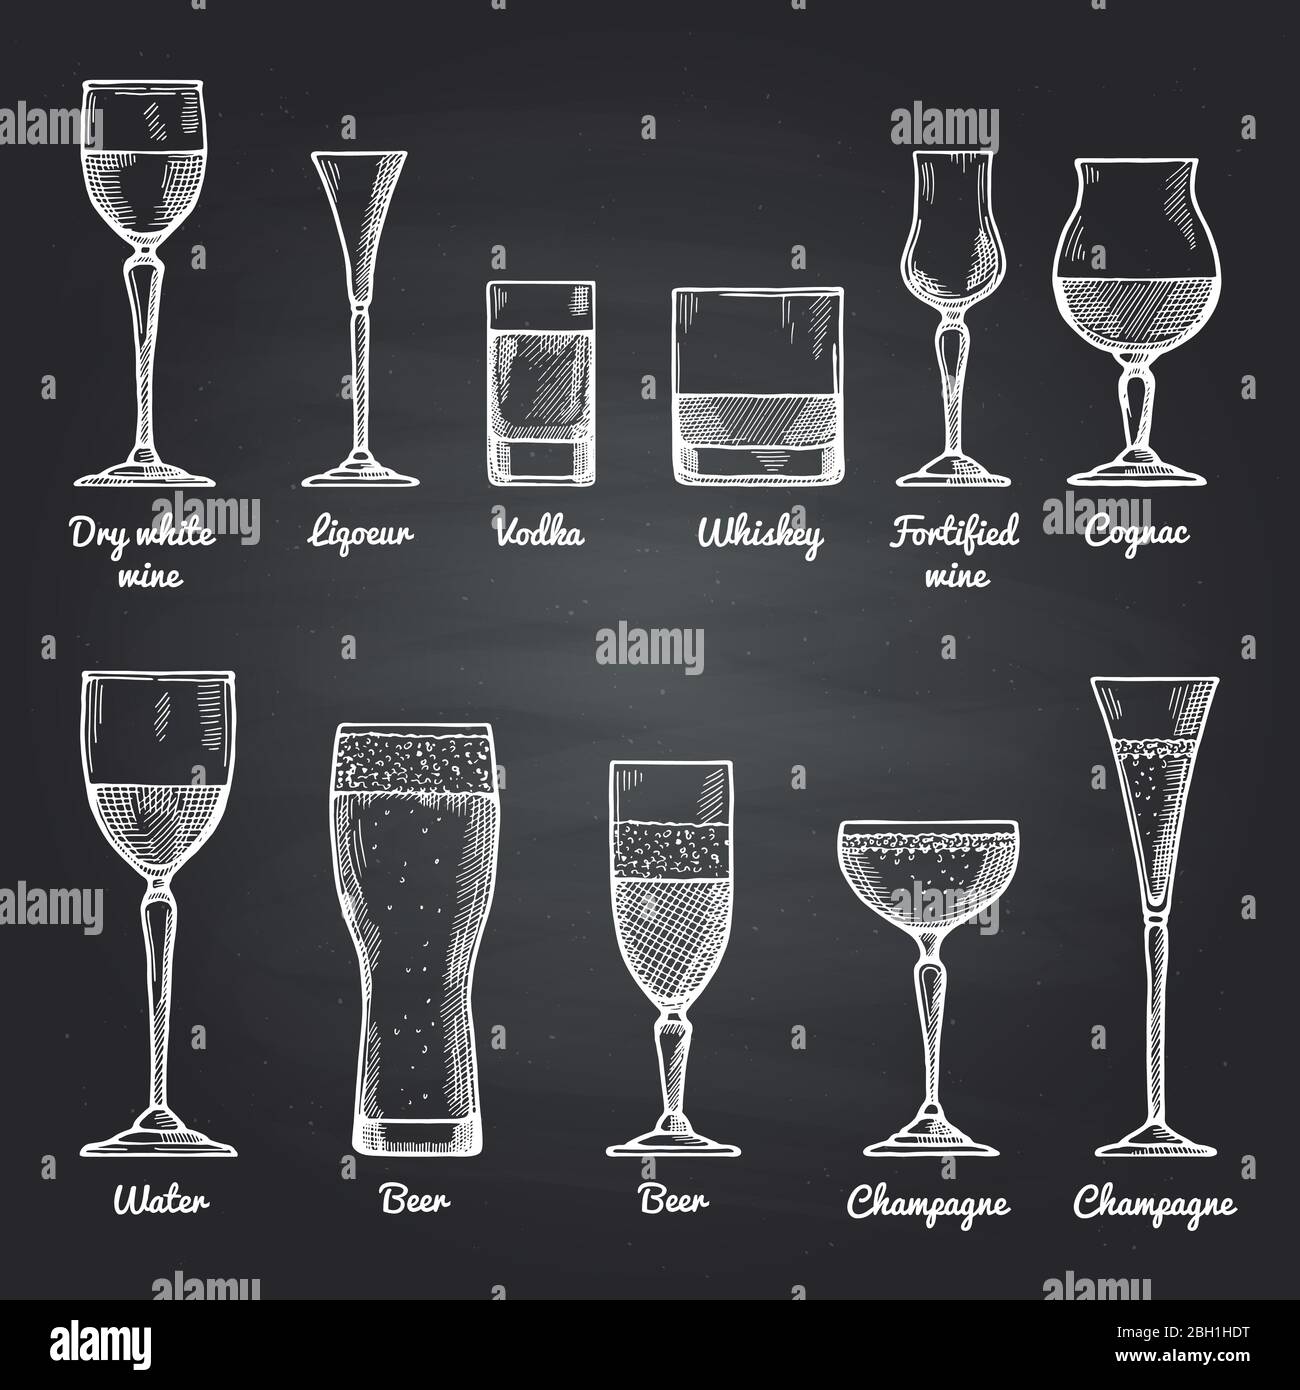 Illustrazioni vettoriali di bicchieri alcolici su lavagna nera. Immagini di disegno vettoriale alcool bevanda schizzo per il menu del bar vino secco e liquore, Illustrazione Vettoriale